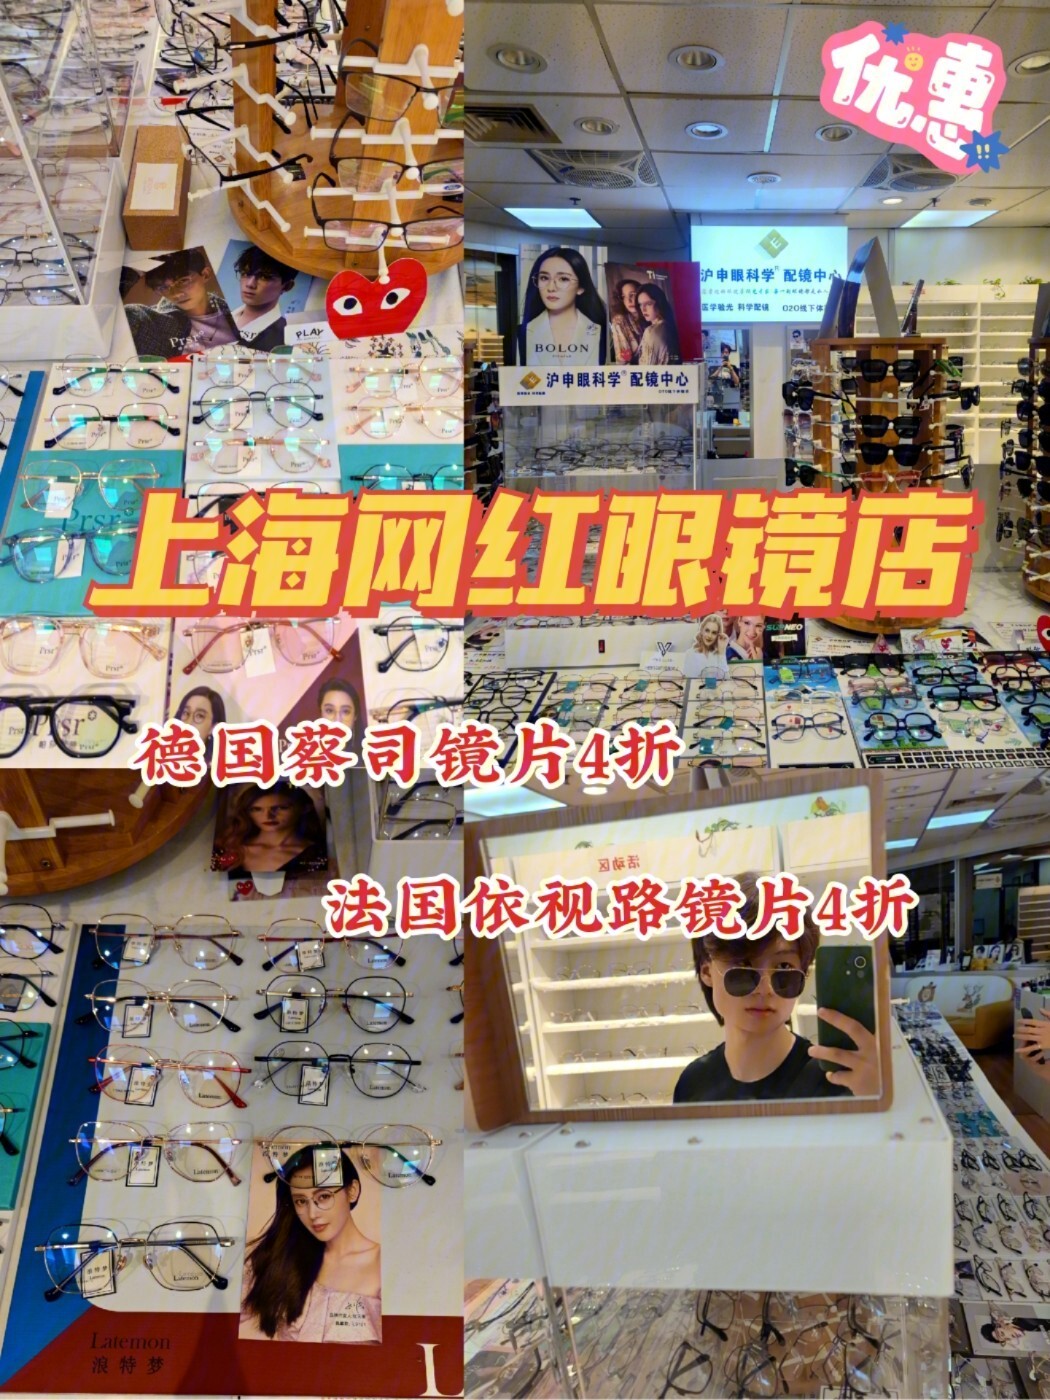 上海配眼镜这家宝藏店铺错过后悔